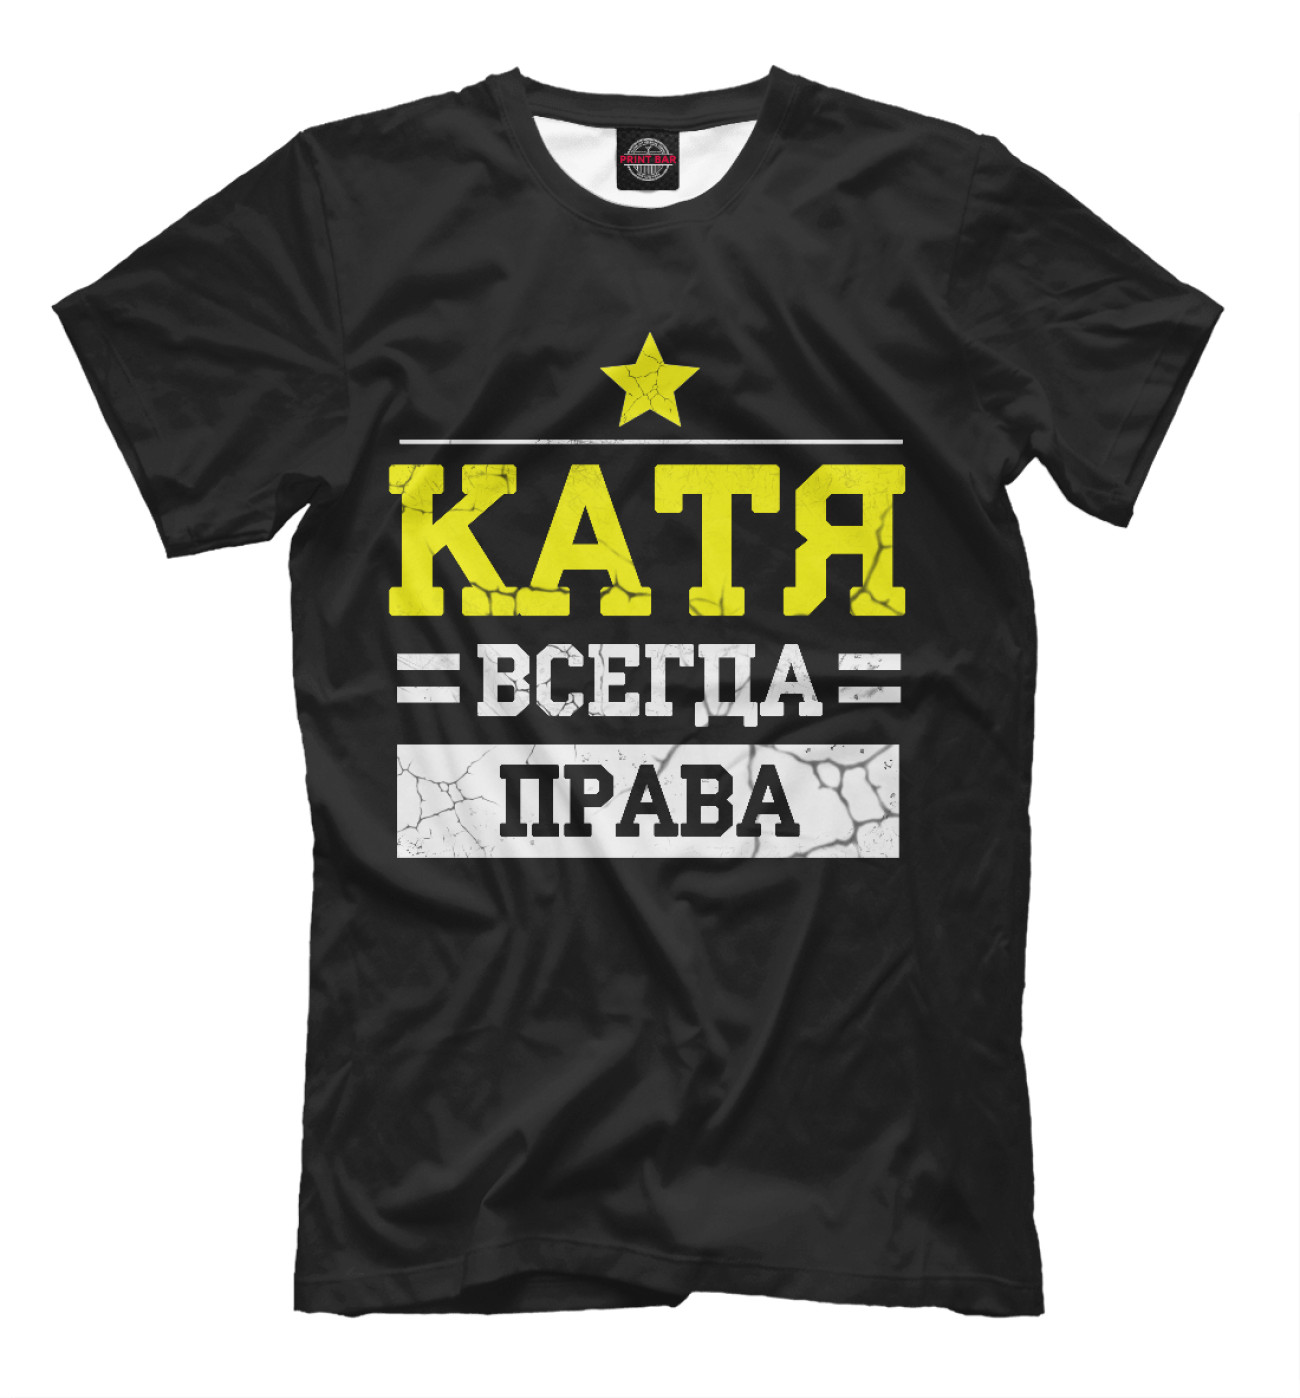 Мужская Футболка Катя, артикул: KAT-445407-fut-2